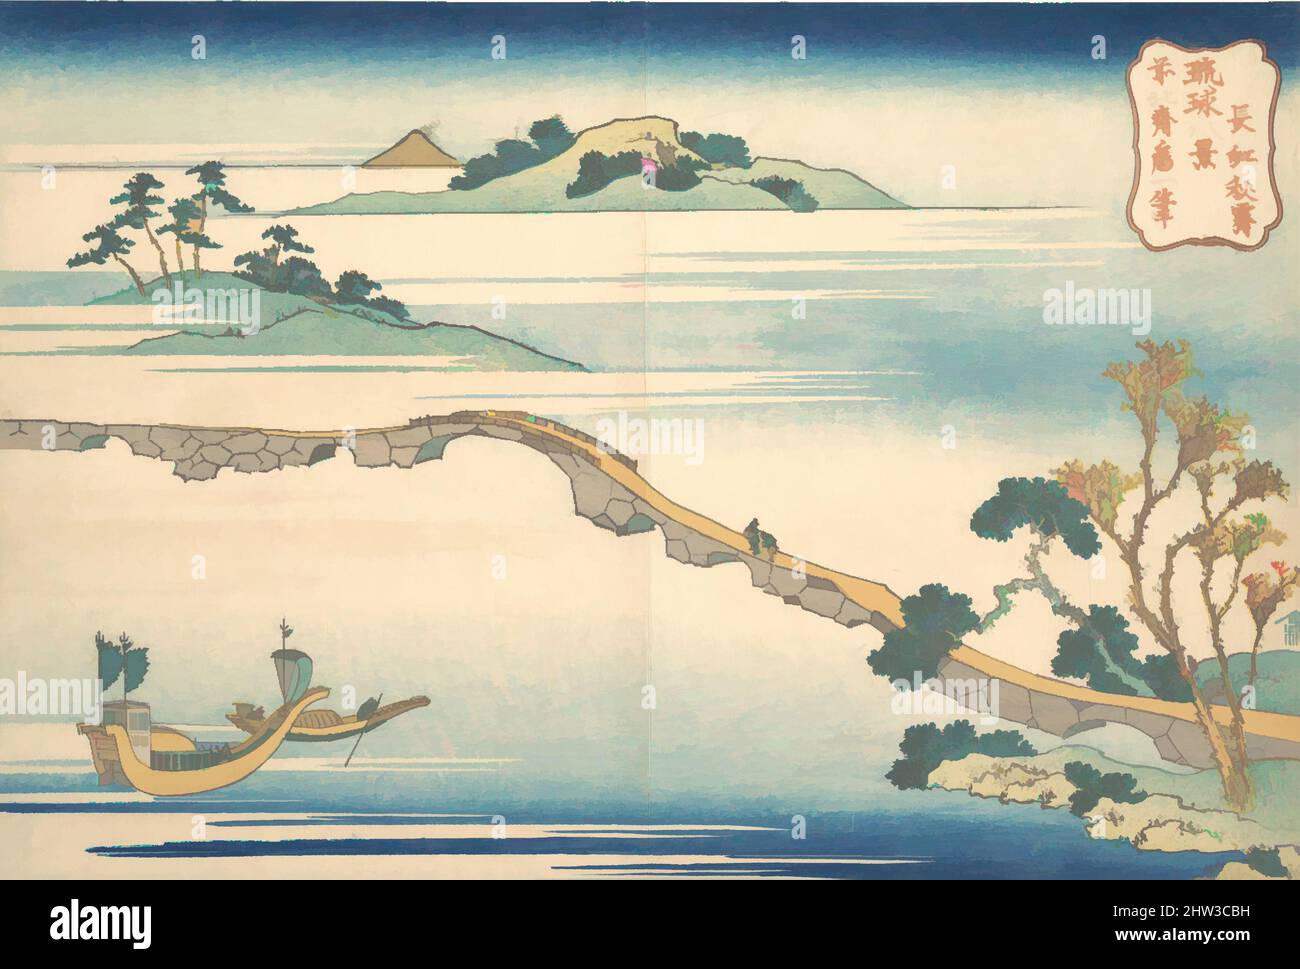 Arte ispirata da 琉球八景 長虹秋霽, Autumn Sky a Chōkō (Chōkō shūsei), dalla serie otto viste delle isole Ryūkyū (Ryūkyū hakkei), periodo Edo (1615–1868), ca. 1832, Giappone, stampa a blocchi di legno policromi; inchiostro e colore su carta, 9 7/8 x 14 5/8 pollici (25,1 x 37,1 cm), stampe, Katsushika Hokusai, opere classiche modernizzate da Artotop con un tuffo di modernità. Forme, colore e valore, impatto visivo accattivante sulle emozioni artistiche attraverso la libertà delle opere d'arte in modo contemporaneo. Un messaggio senza tempo che persegue una nuova direzione selvaggiamente creativa. Artisti che si rivolgono al supporto digitale e creano l'NFT Artotop Foto Stock